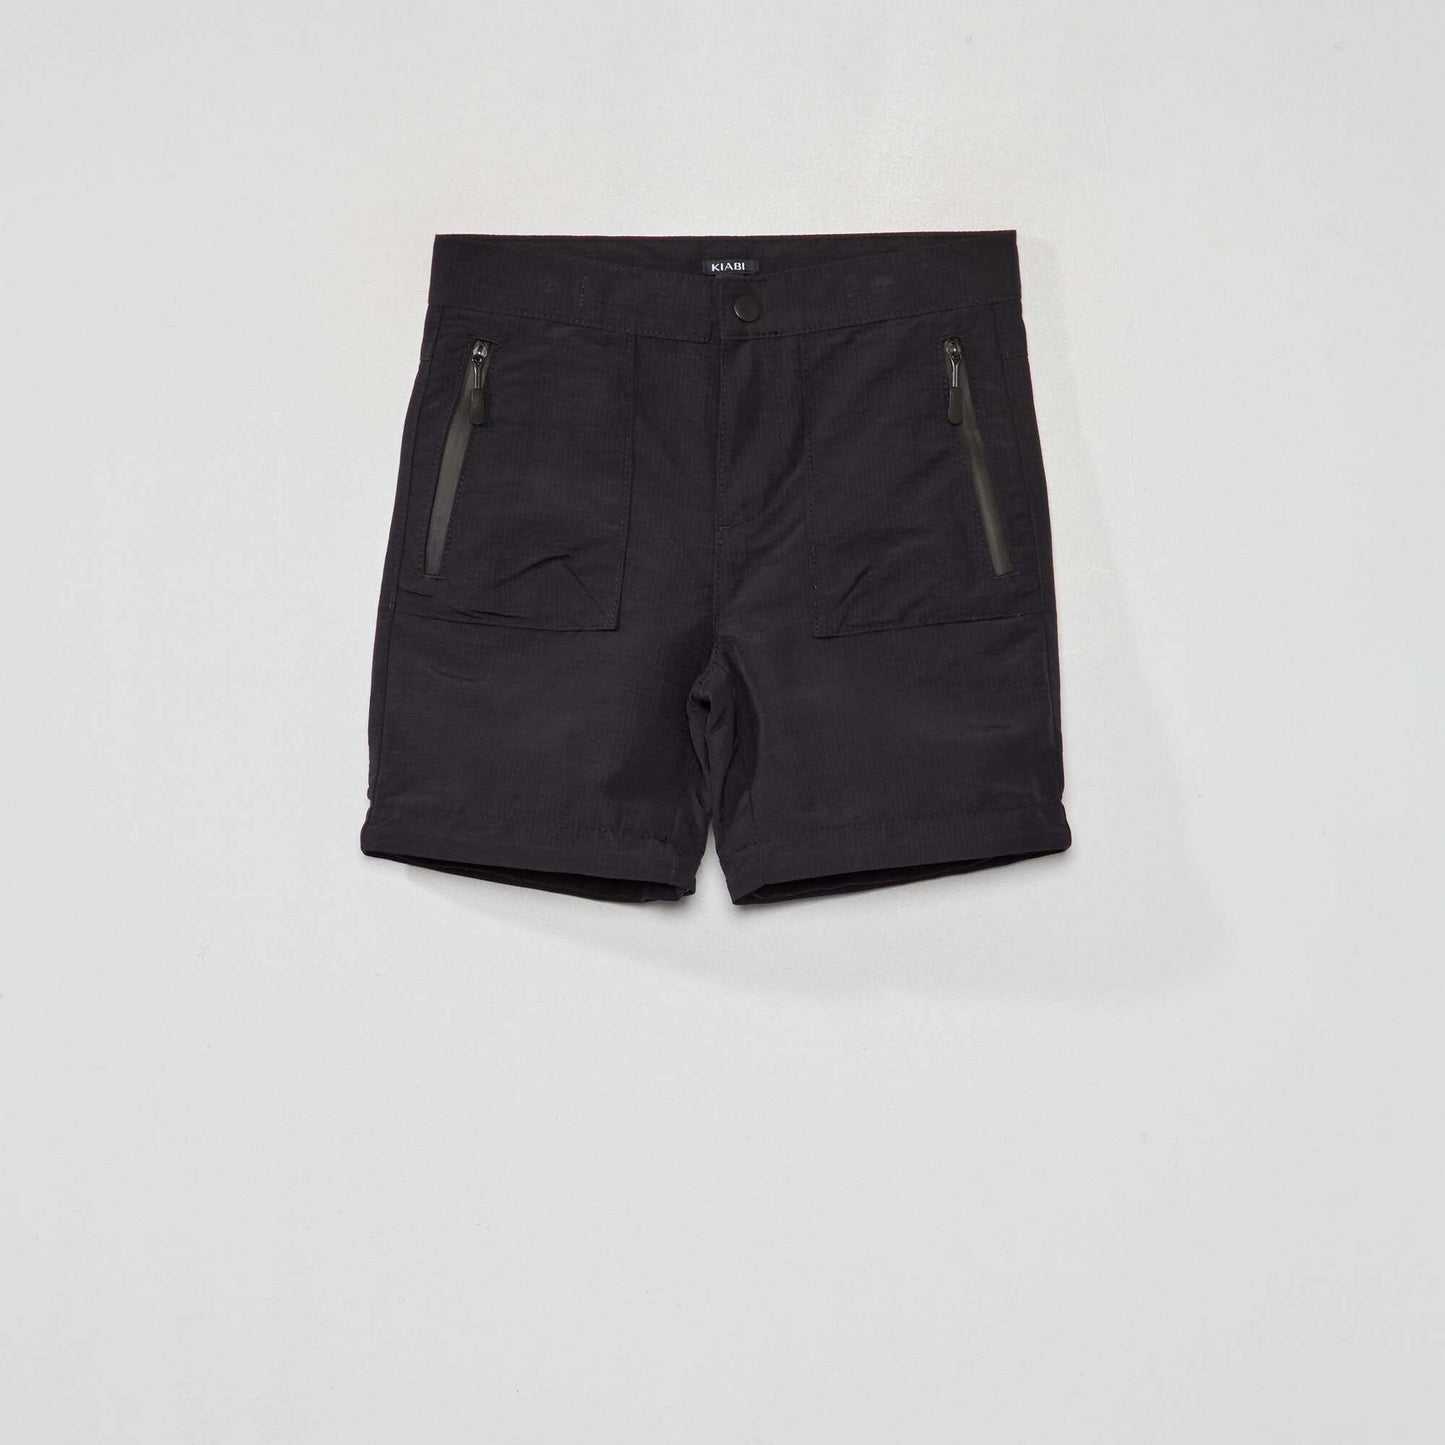 Pantalon/short 2 en 1 NEGRO DE VERDAD